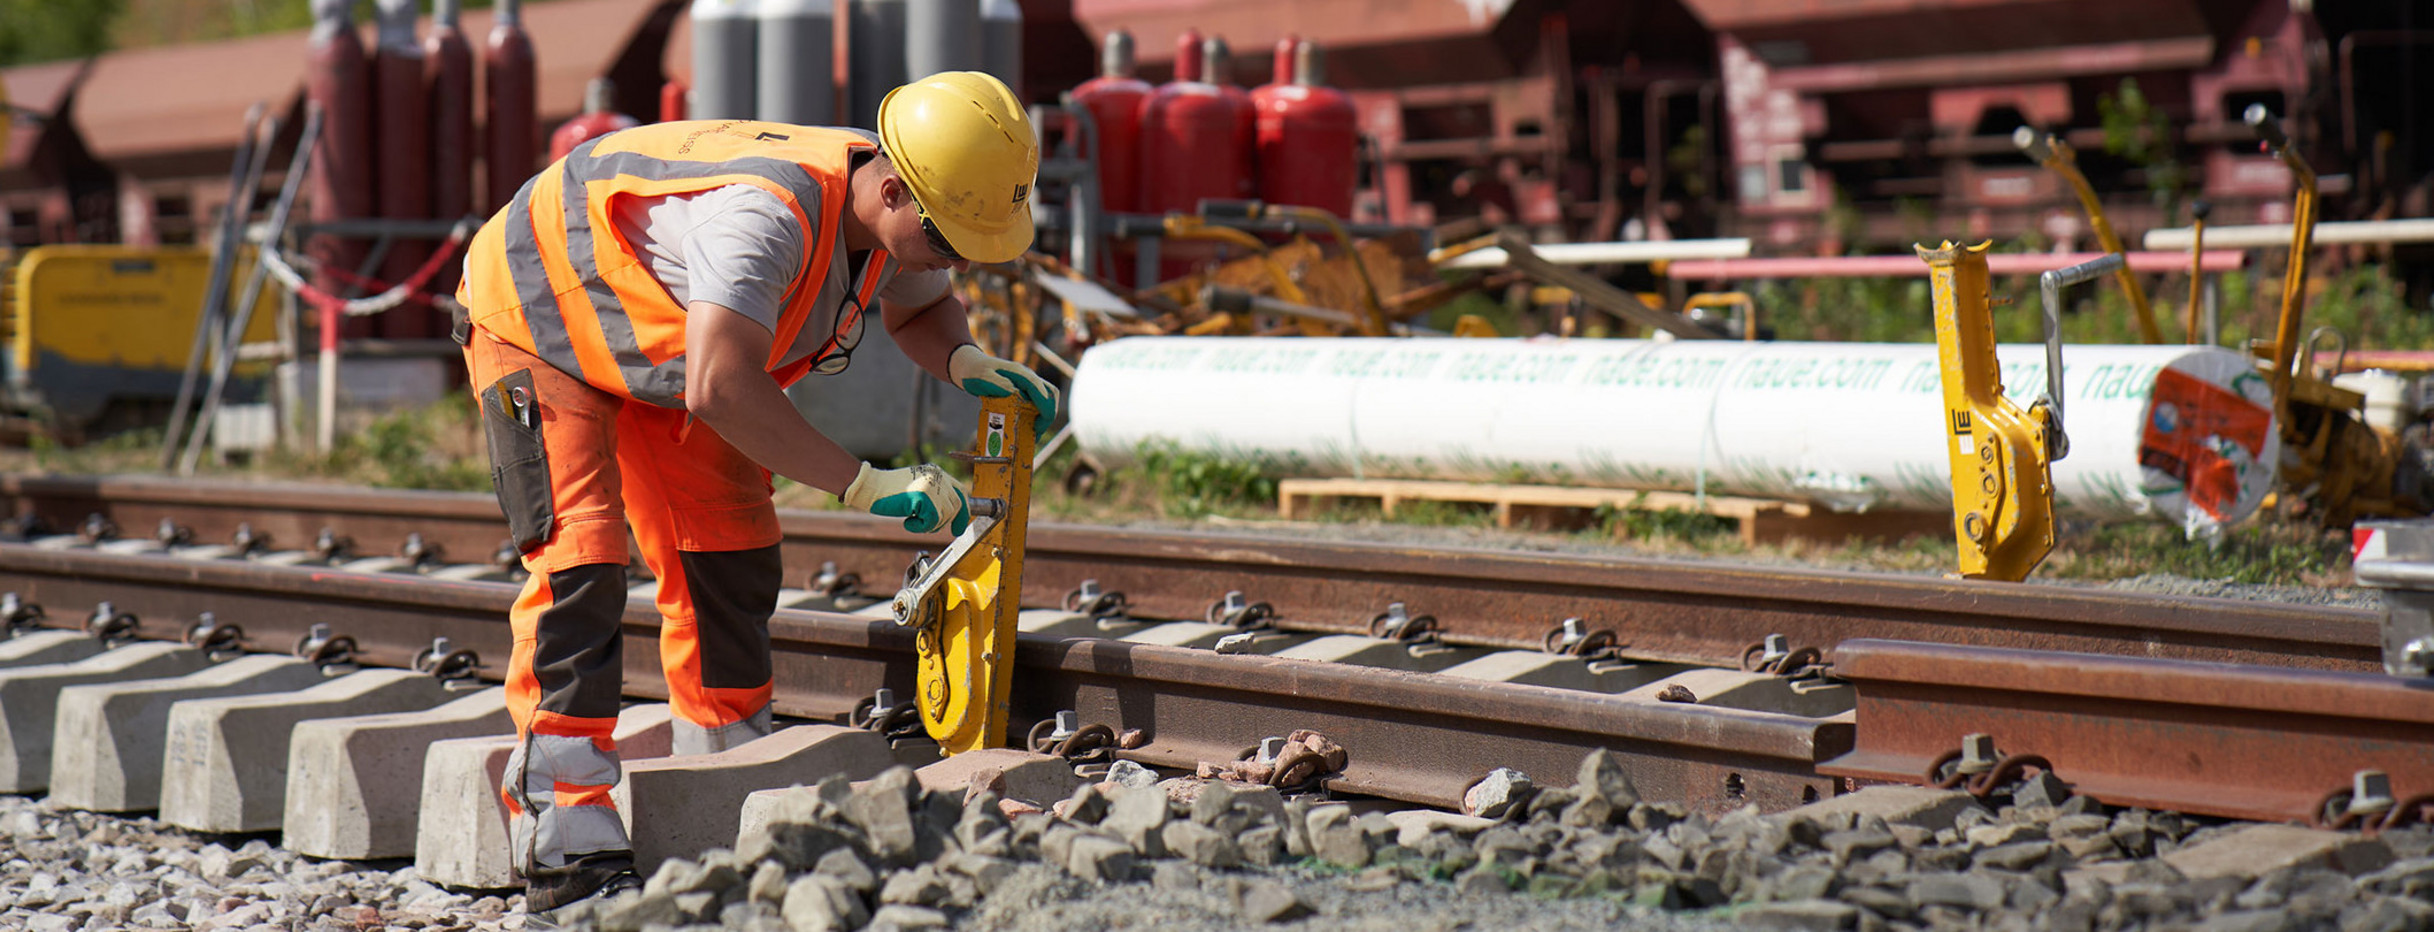 Ein Gleisarbeiter arbeitet an einer Schiene.